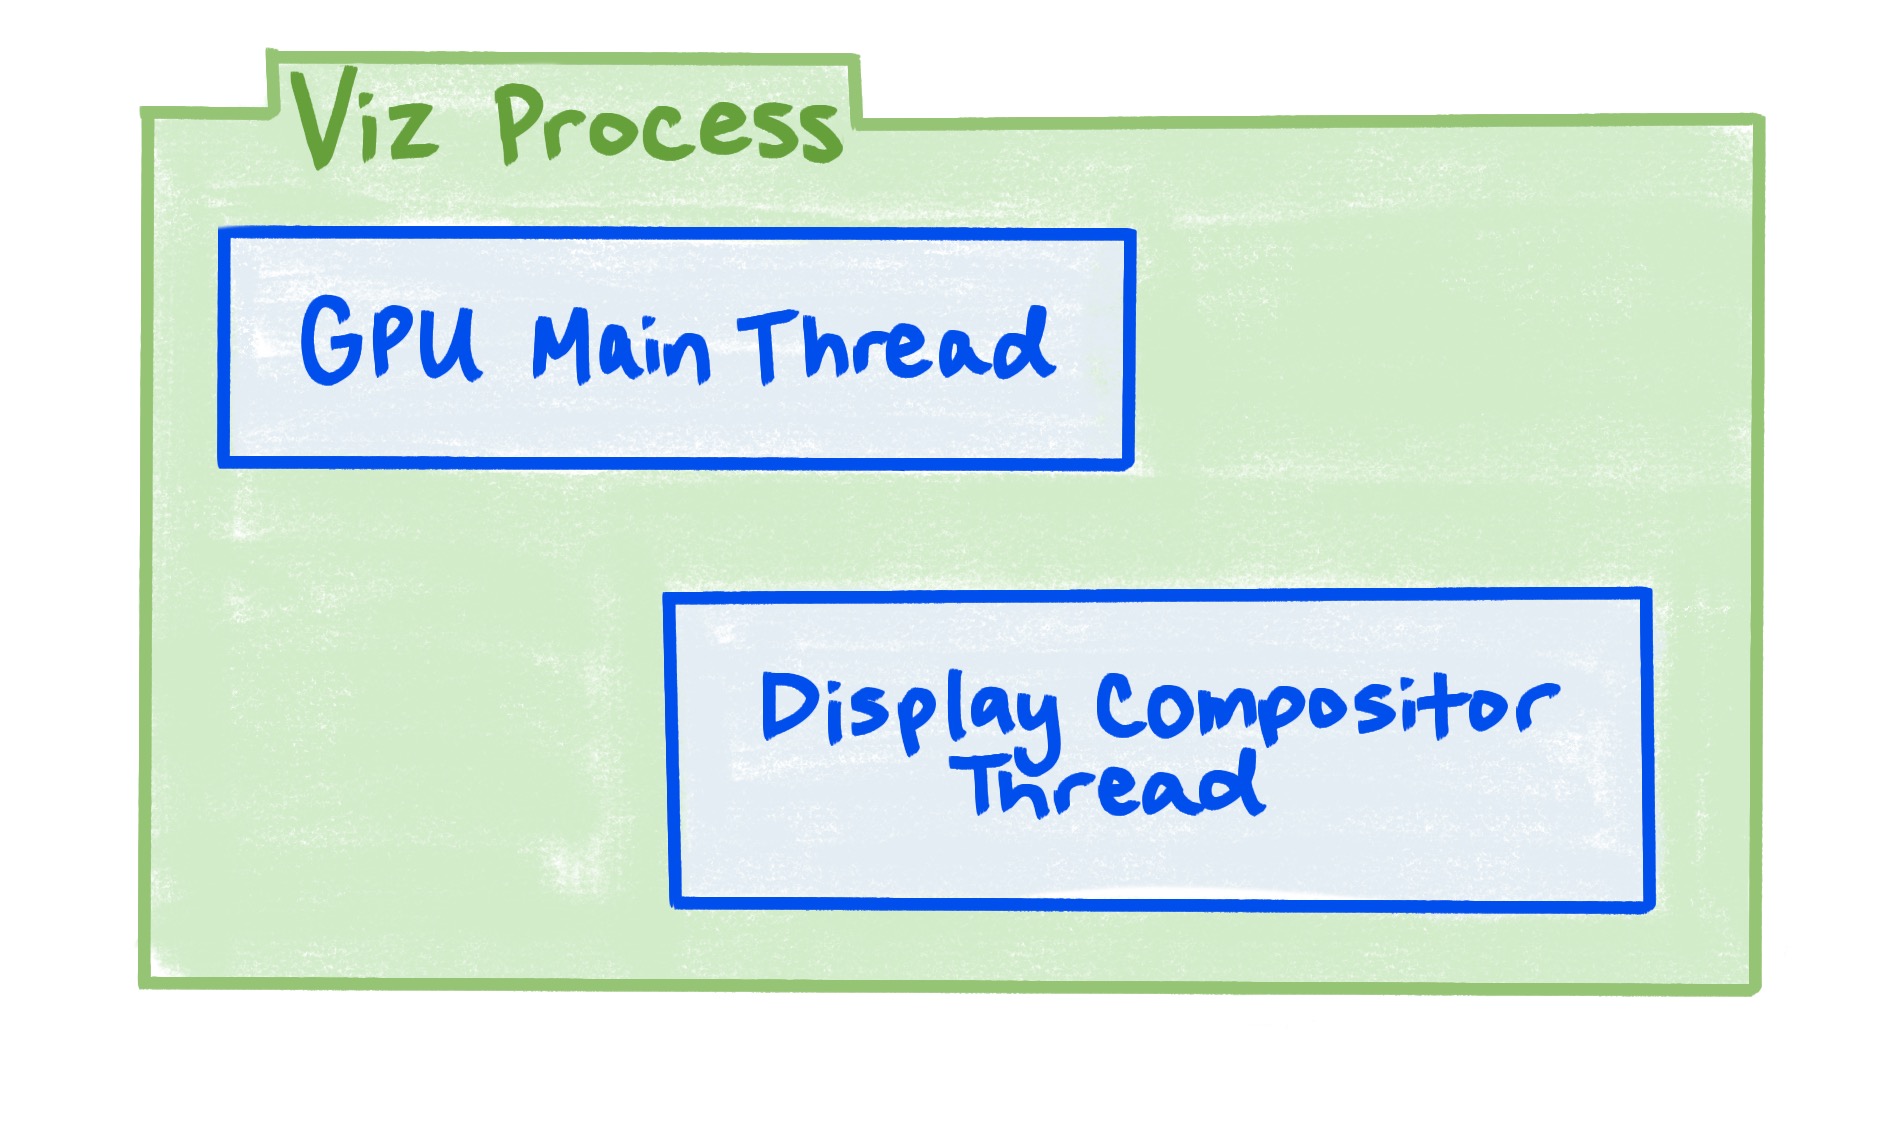 Il processo Viz include il thread principale della GPU e il thread del compositore di visualizzazione.